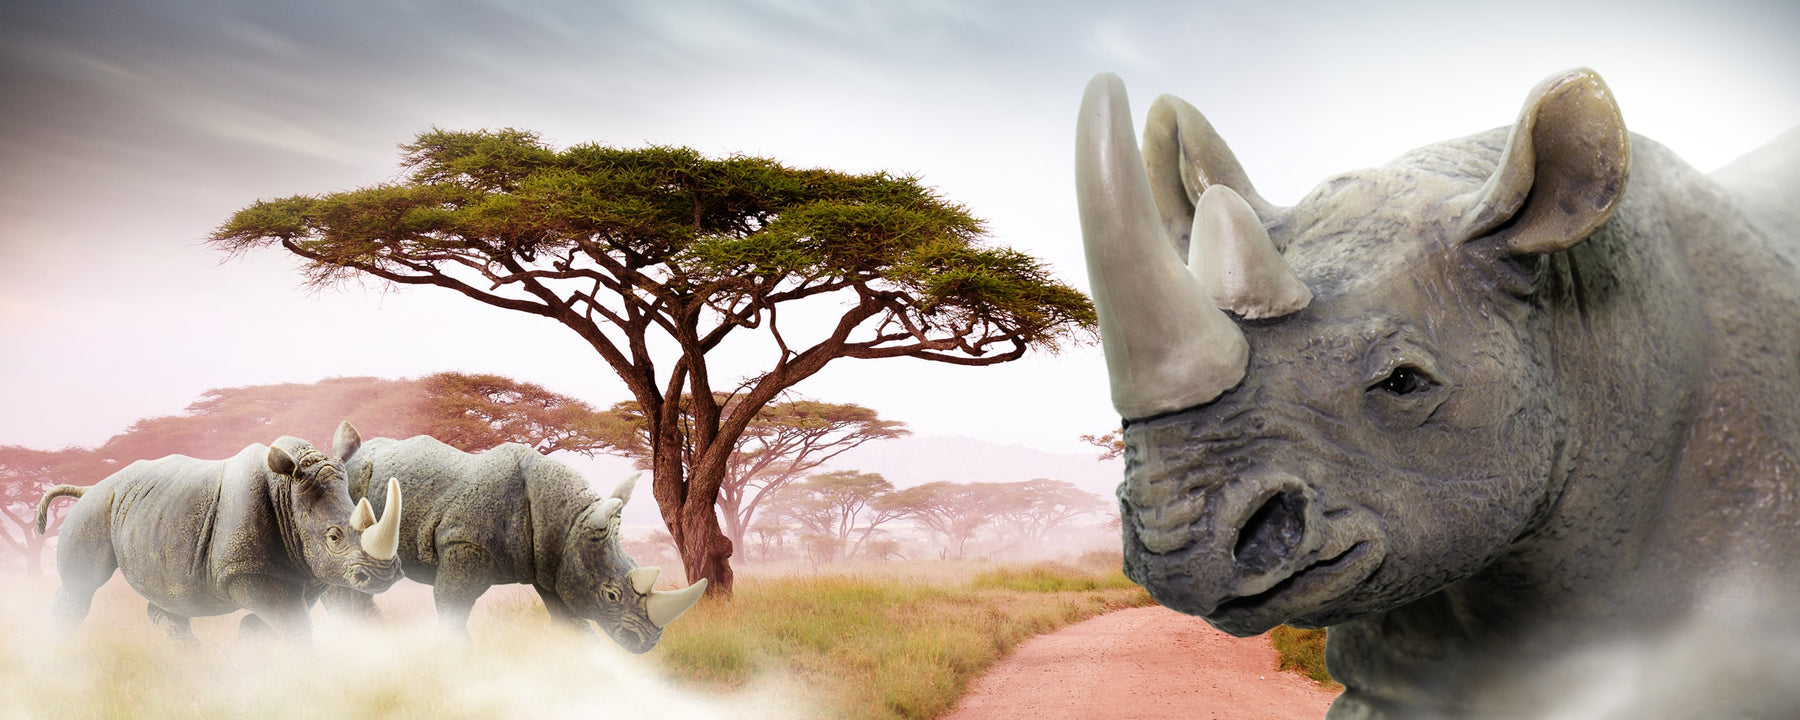 It's Save the Rhino Day! - Safari Ltd®